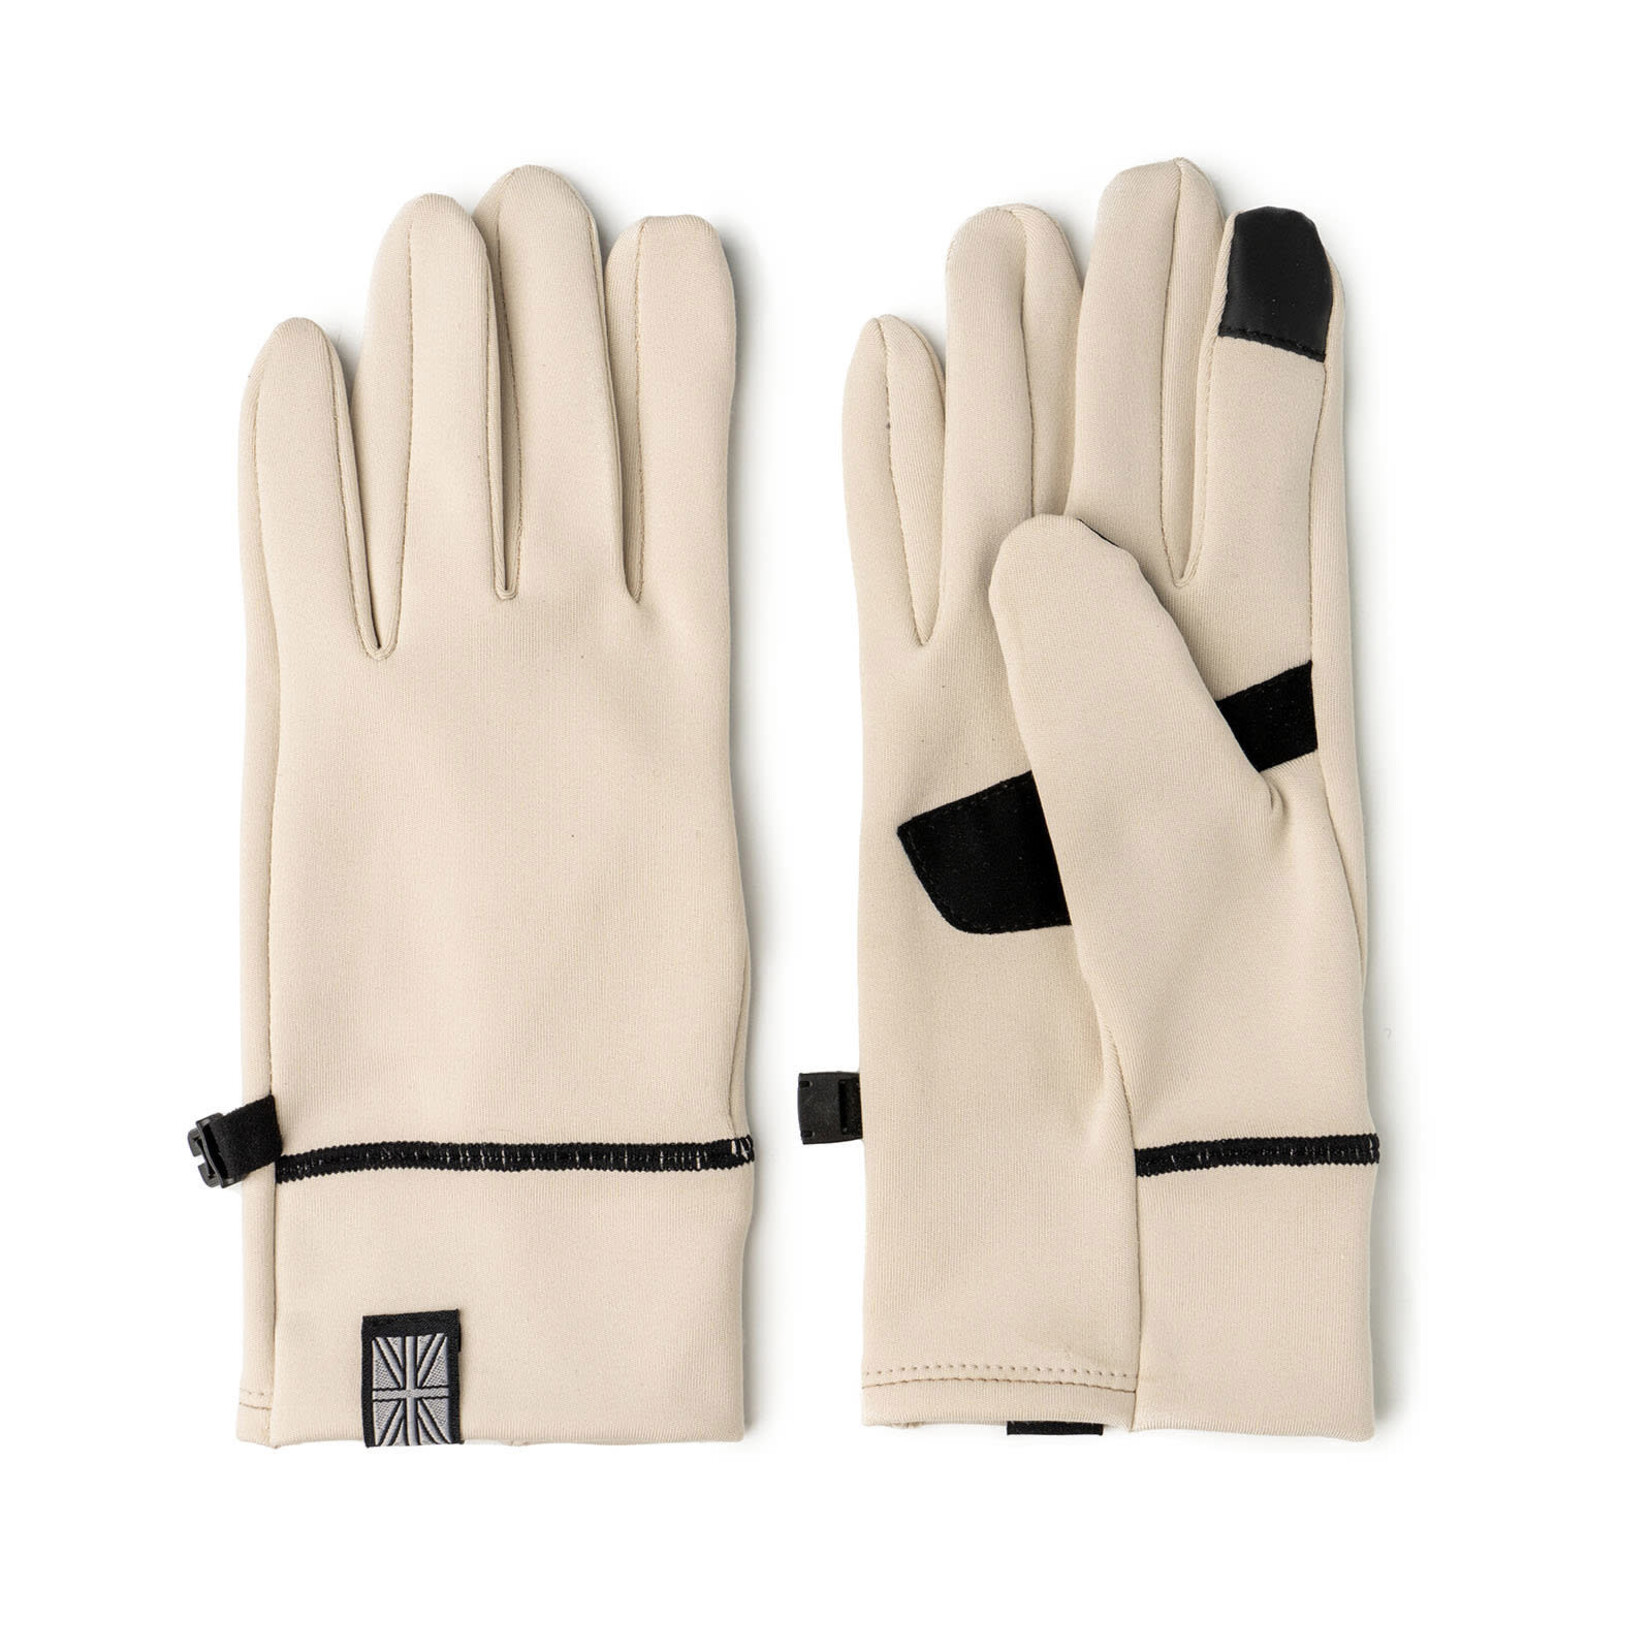 Britt's Knits Britt's Knit ThermalTech Gloves Ivory L/XL